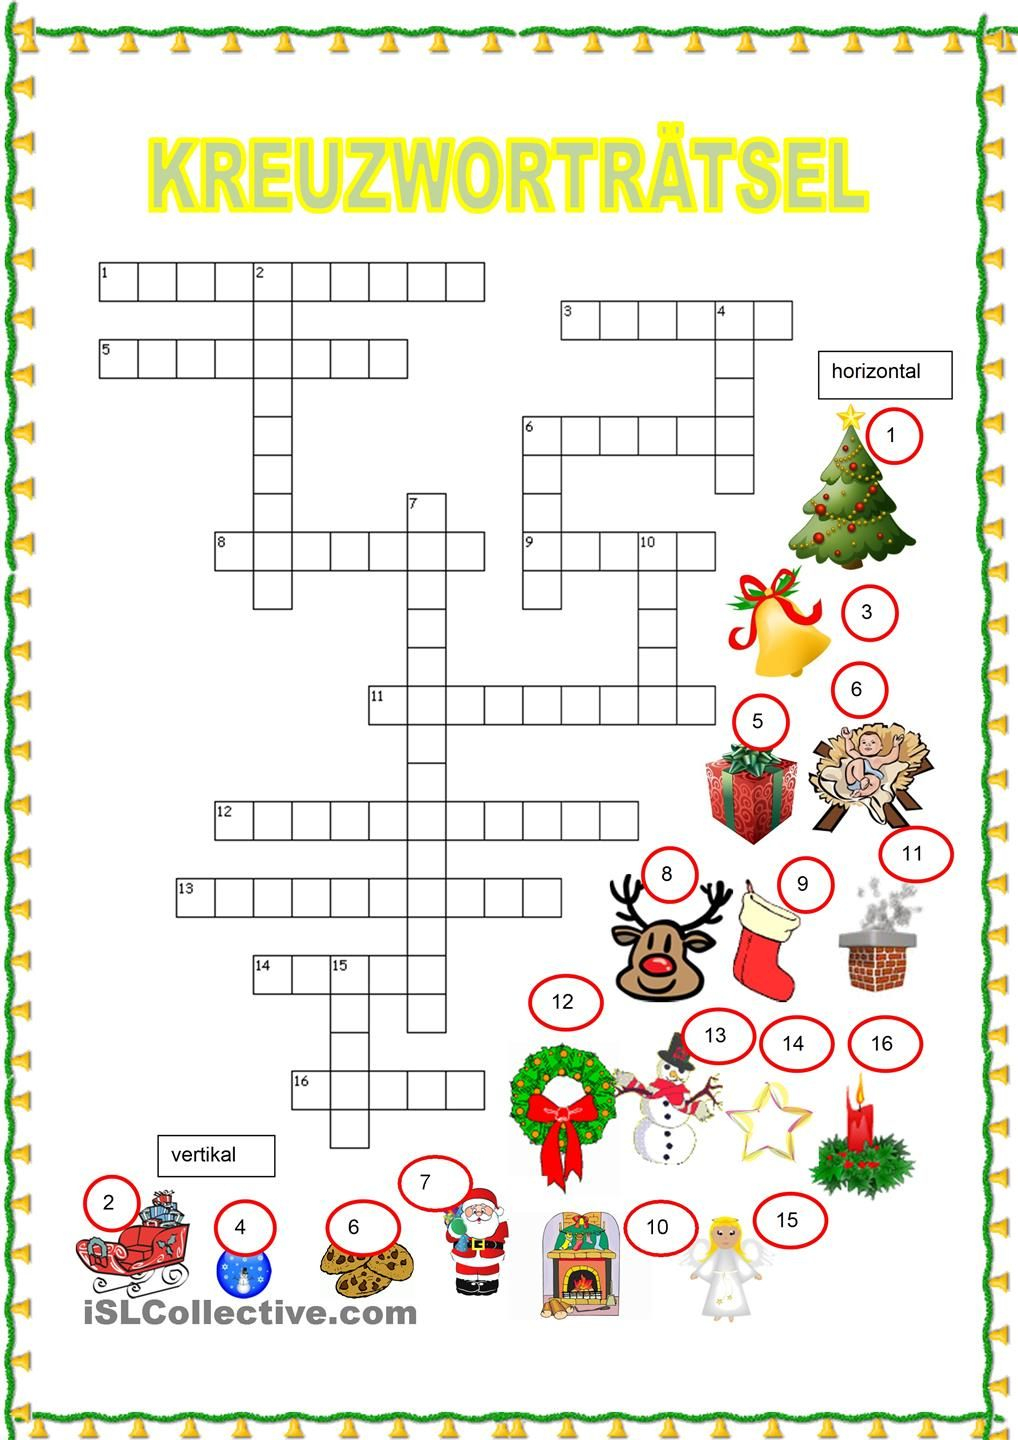 Kreuzworträtsel - Weihnachten (Mit Bildern) | Weihnachten mit Weihnachtskreuzworträtsel